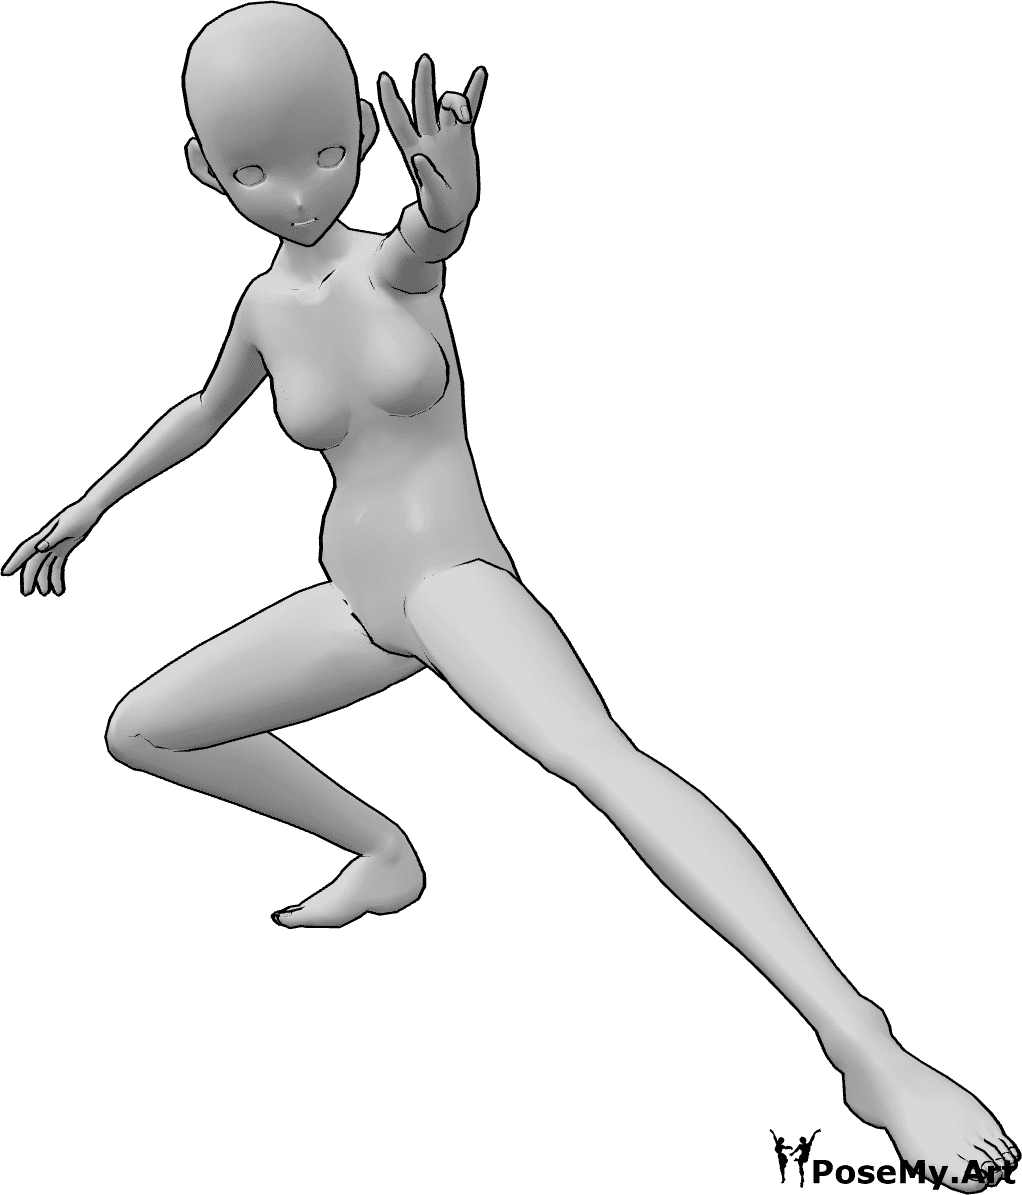 Referencia de poses- Pose anime para lanzar hechizos - Mujer anime está en cuclillas y lanza un hechizo con la mano izquierda